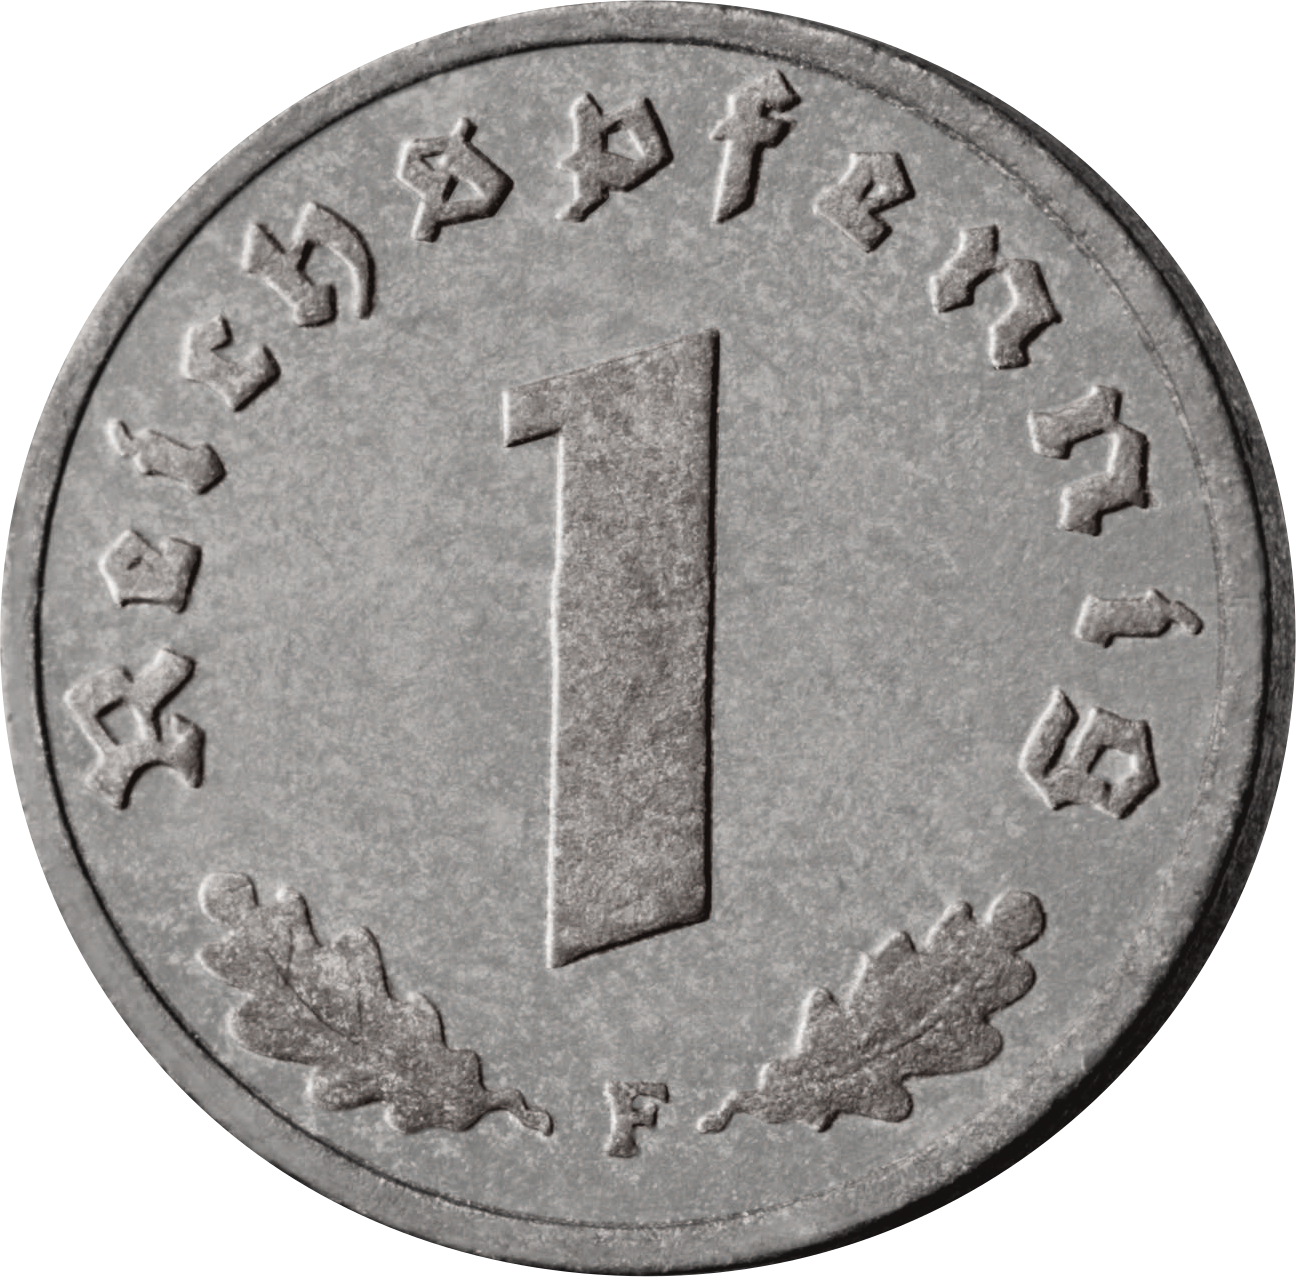 Drittes Reich 1 Reichspfennig 1940-1945